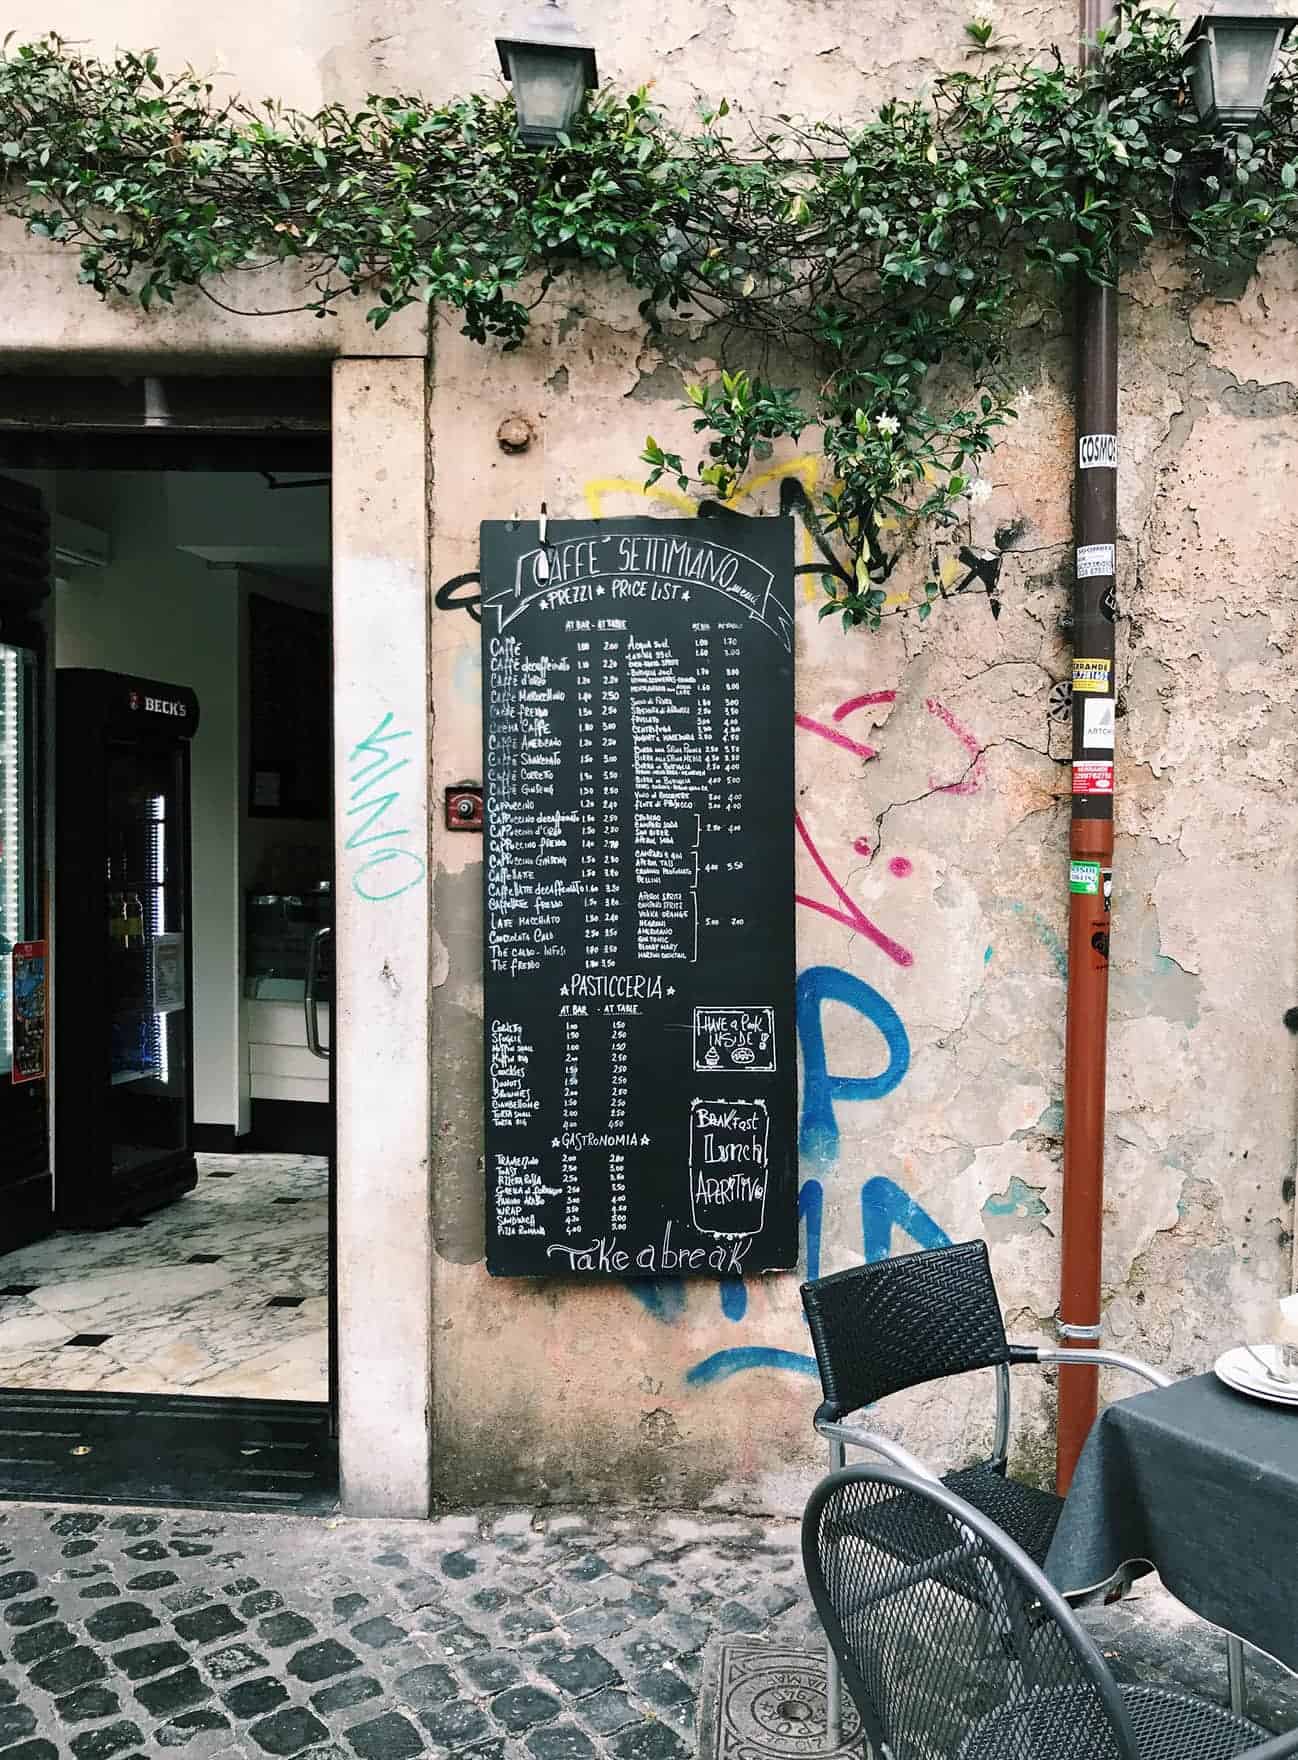 Cafe facade in Rome, Italy